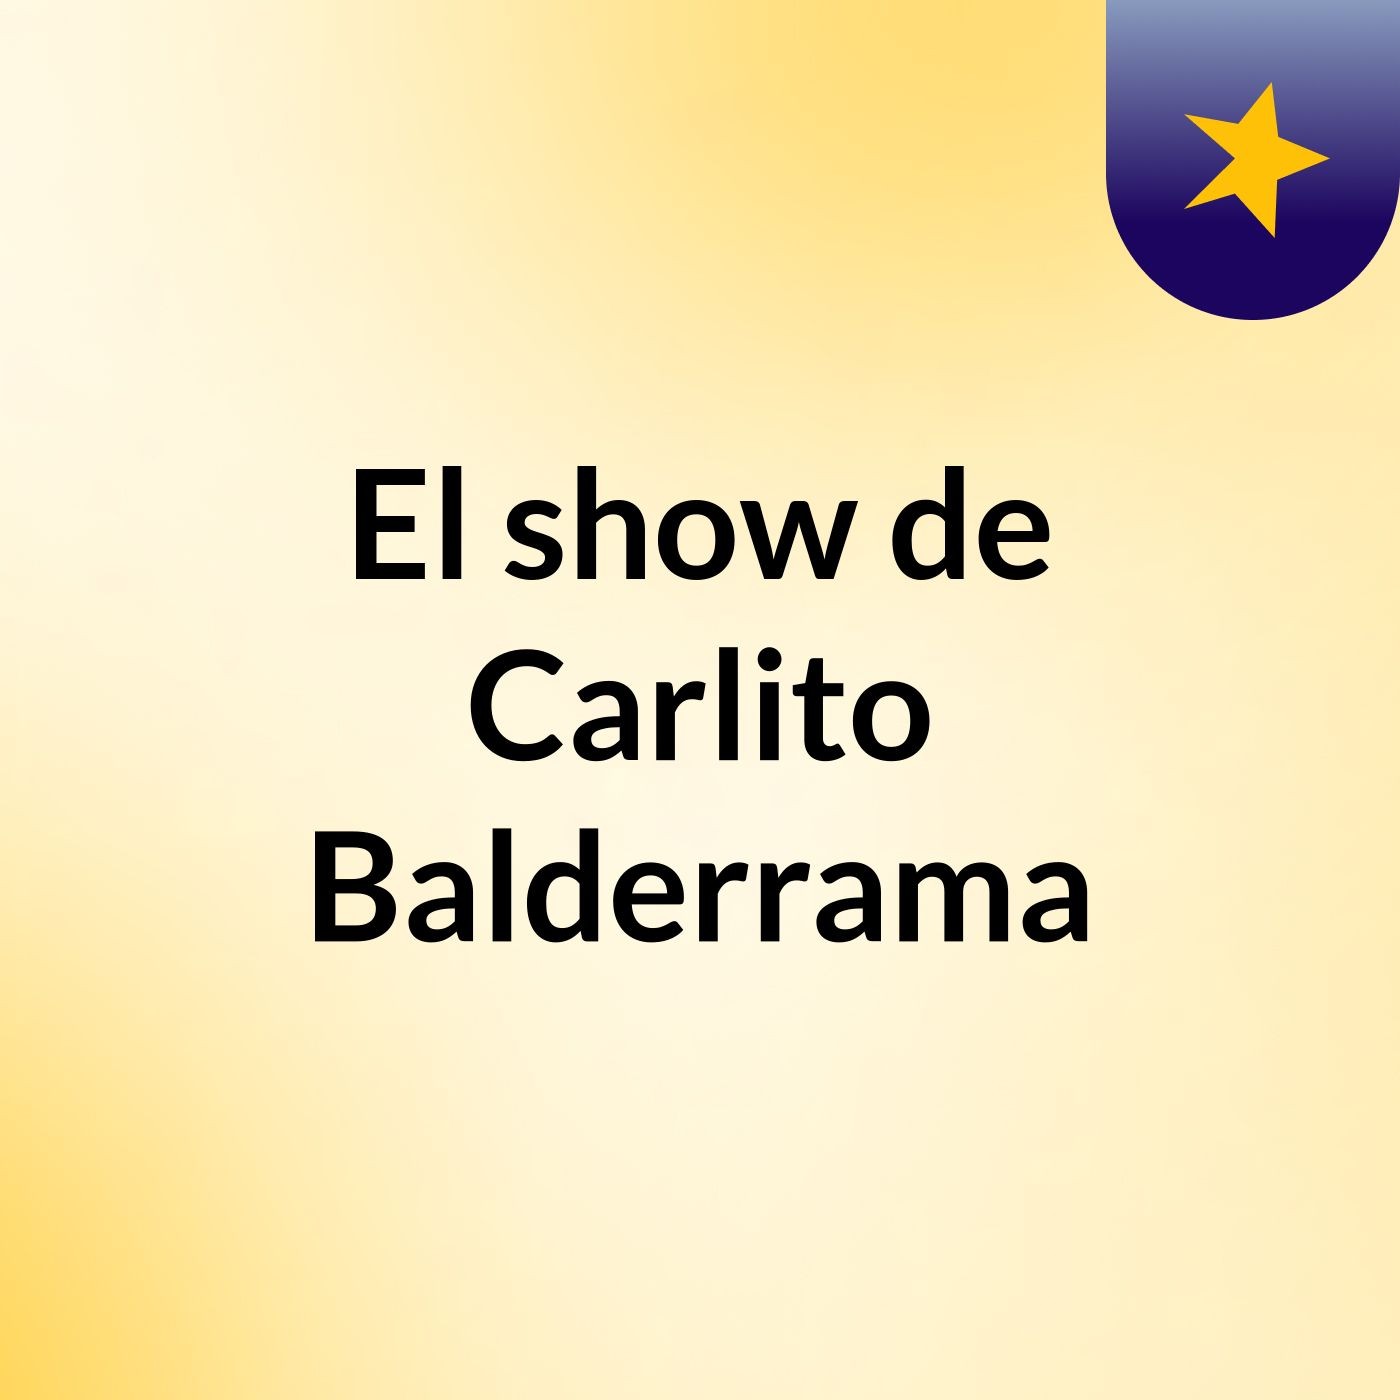 El show de Carlito Balderrama